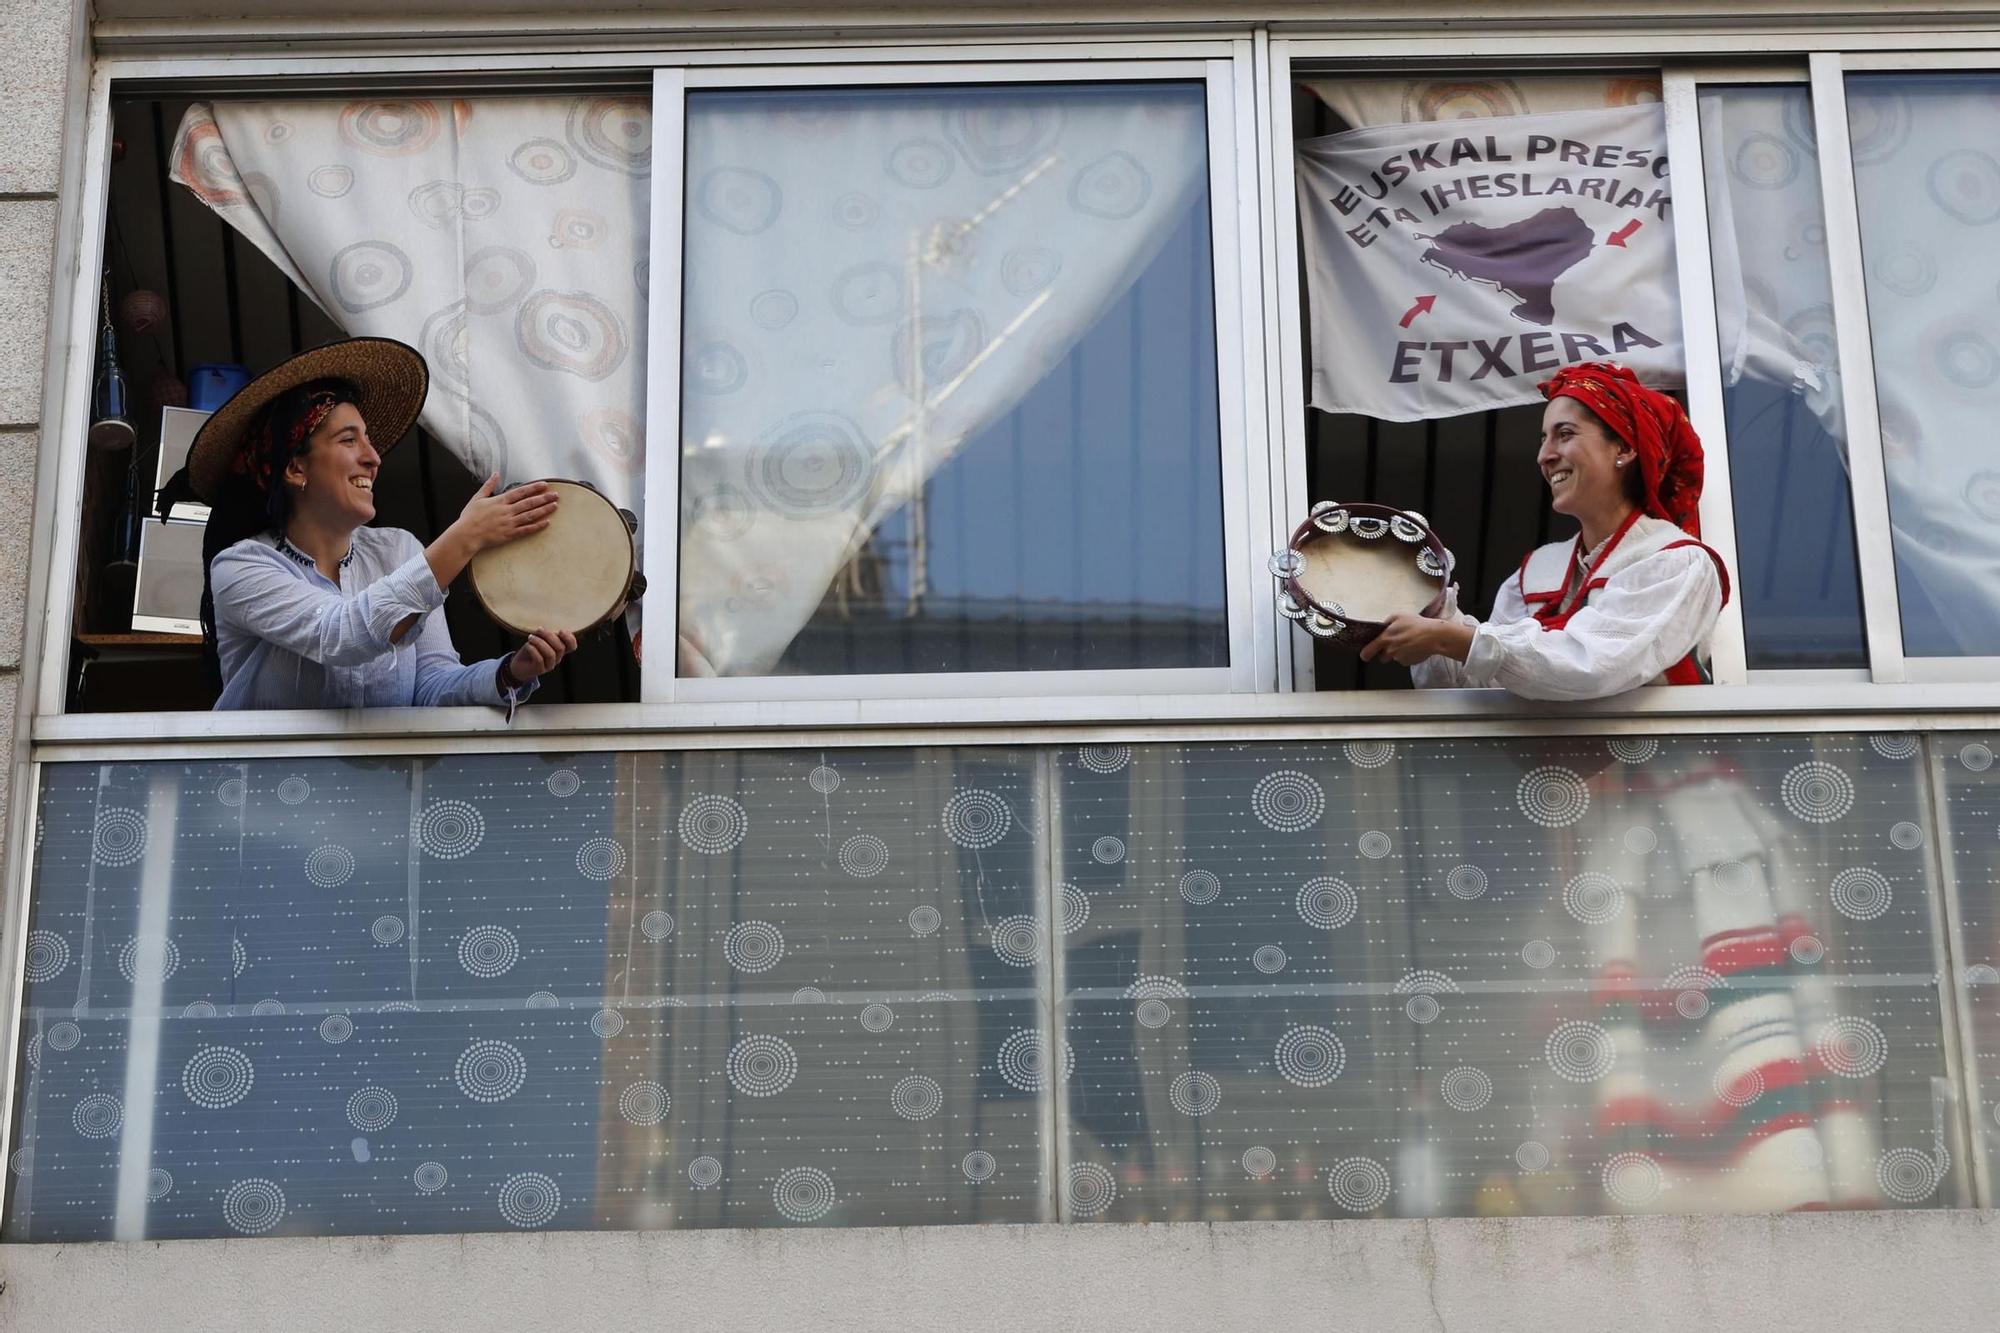 2020 Vecinos del casco vello celebraron la Reconquista desde balcones y ventanas debido al confinamiento por el COVID José Lores.jpg